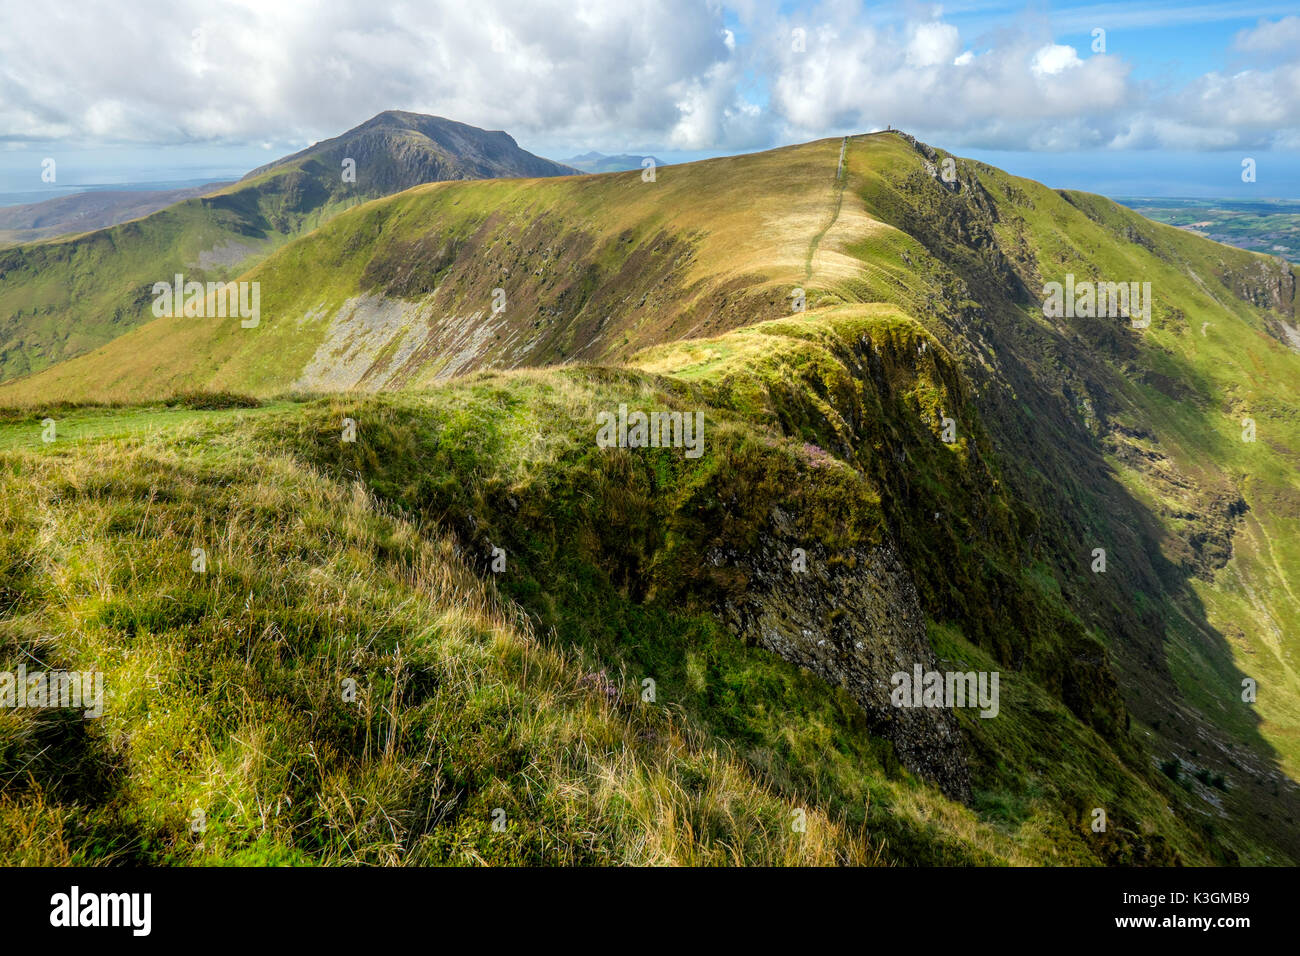 Craig Cwm Silyn and Mynydd Tal-y-mignedd on the Nantle Ridge, Snowdonia, North Wales, UK Stock Photo